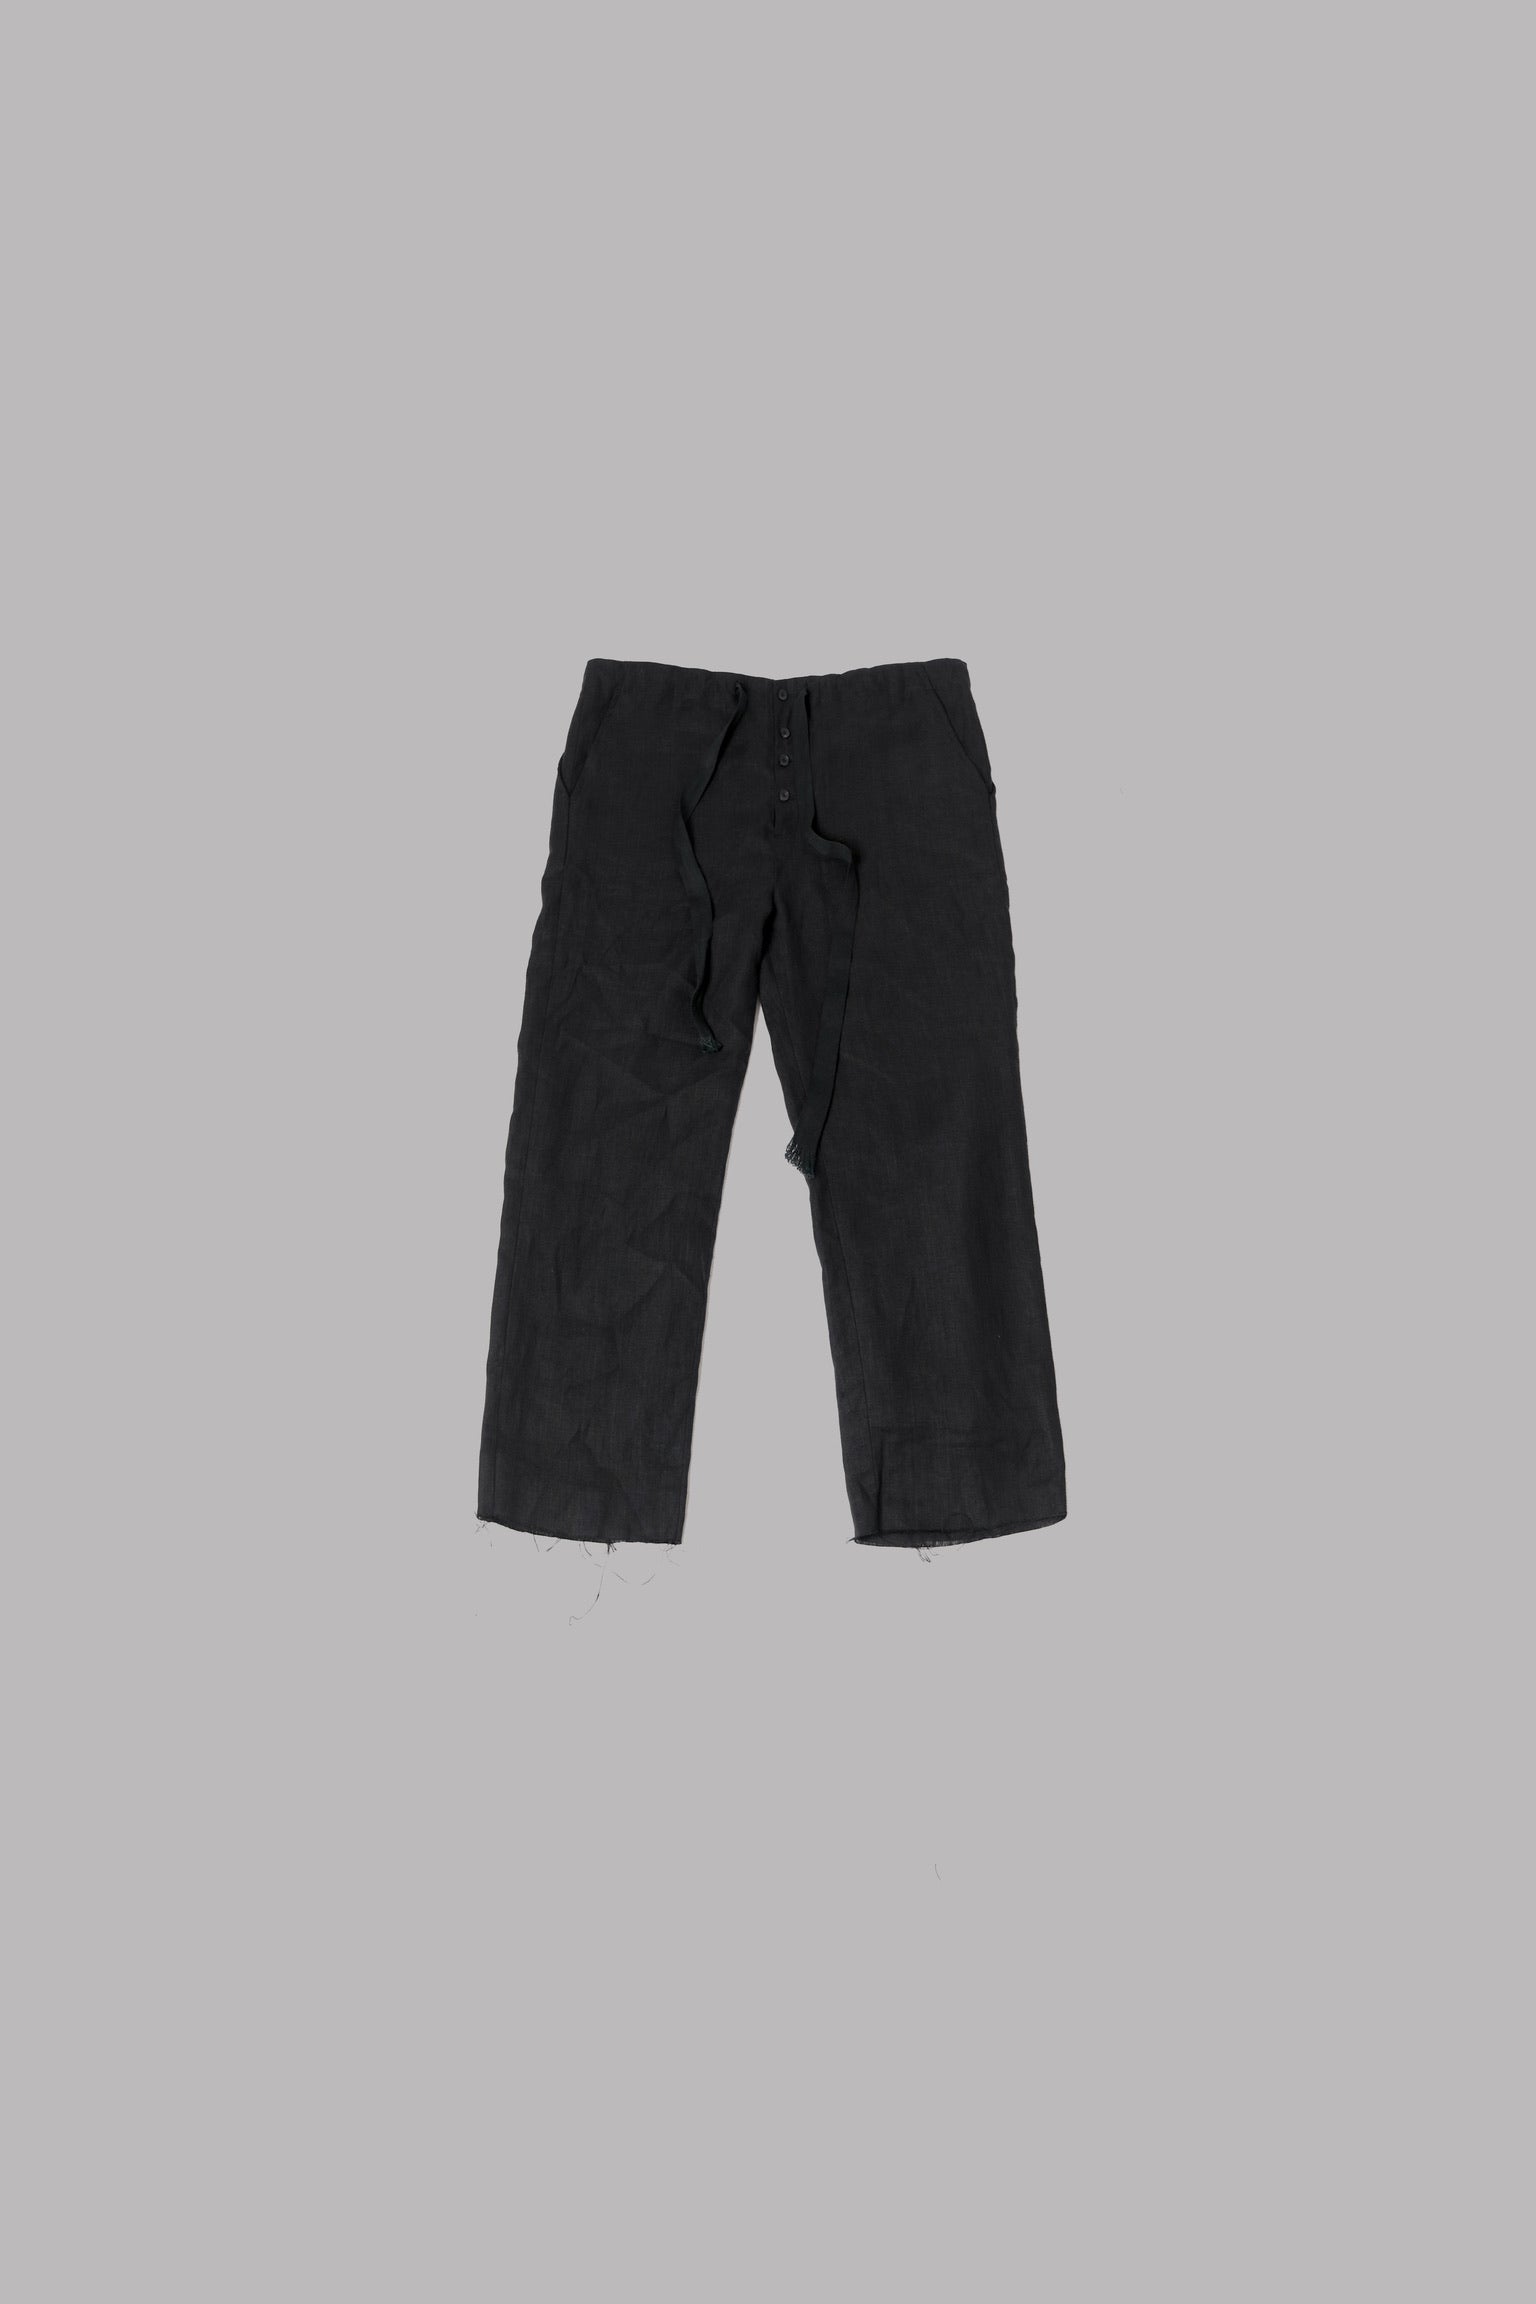 014- Basic Cropped Pants